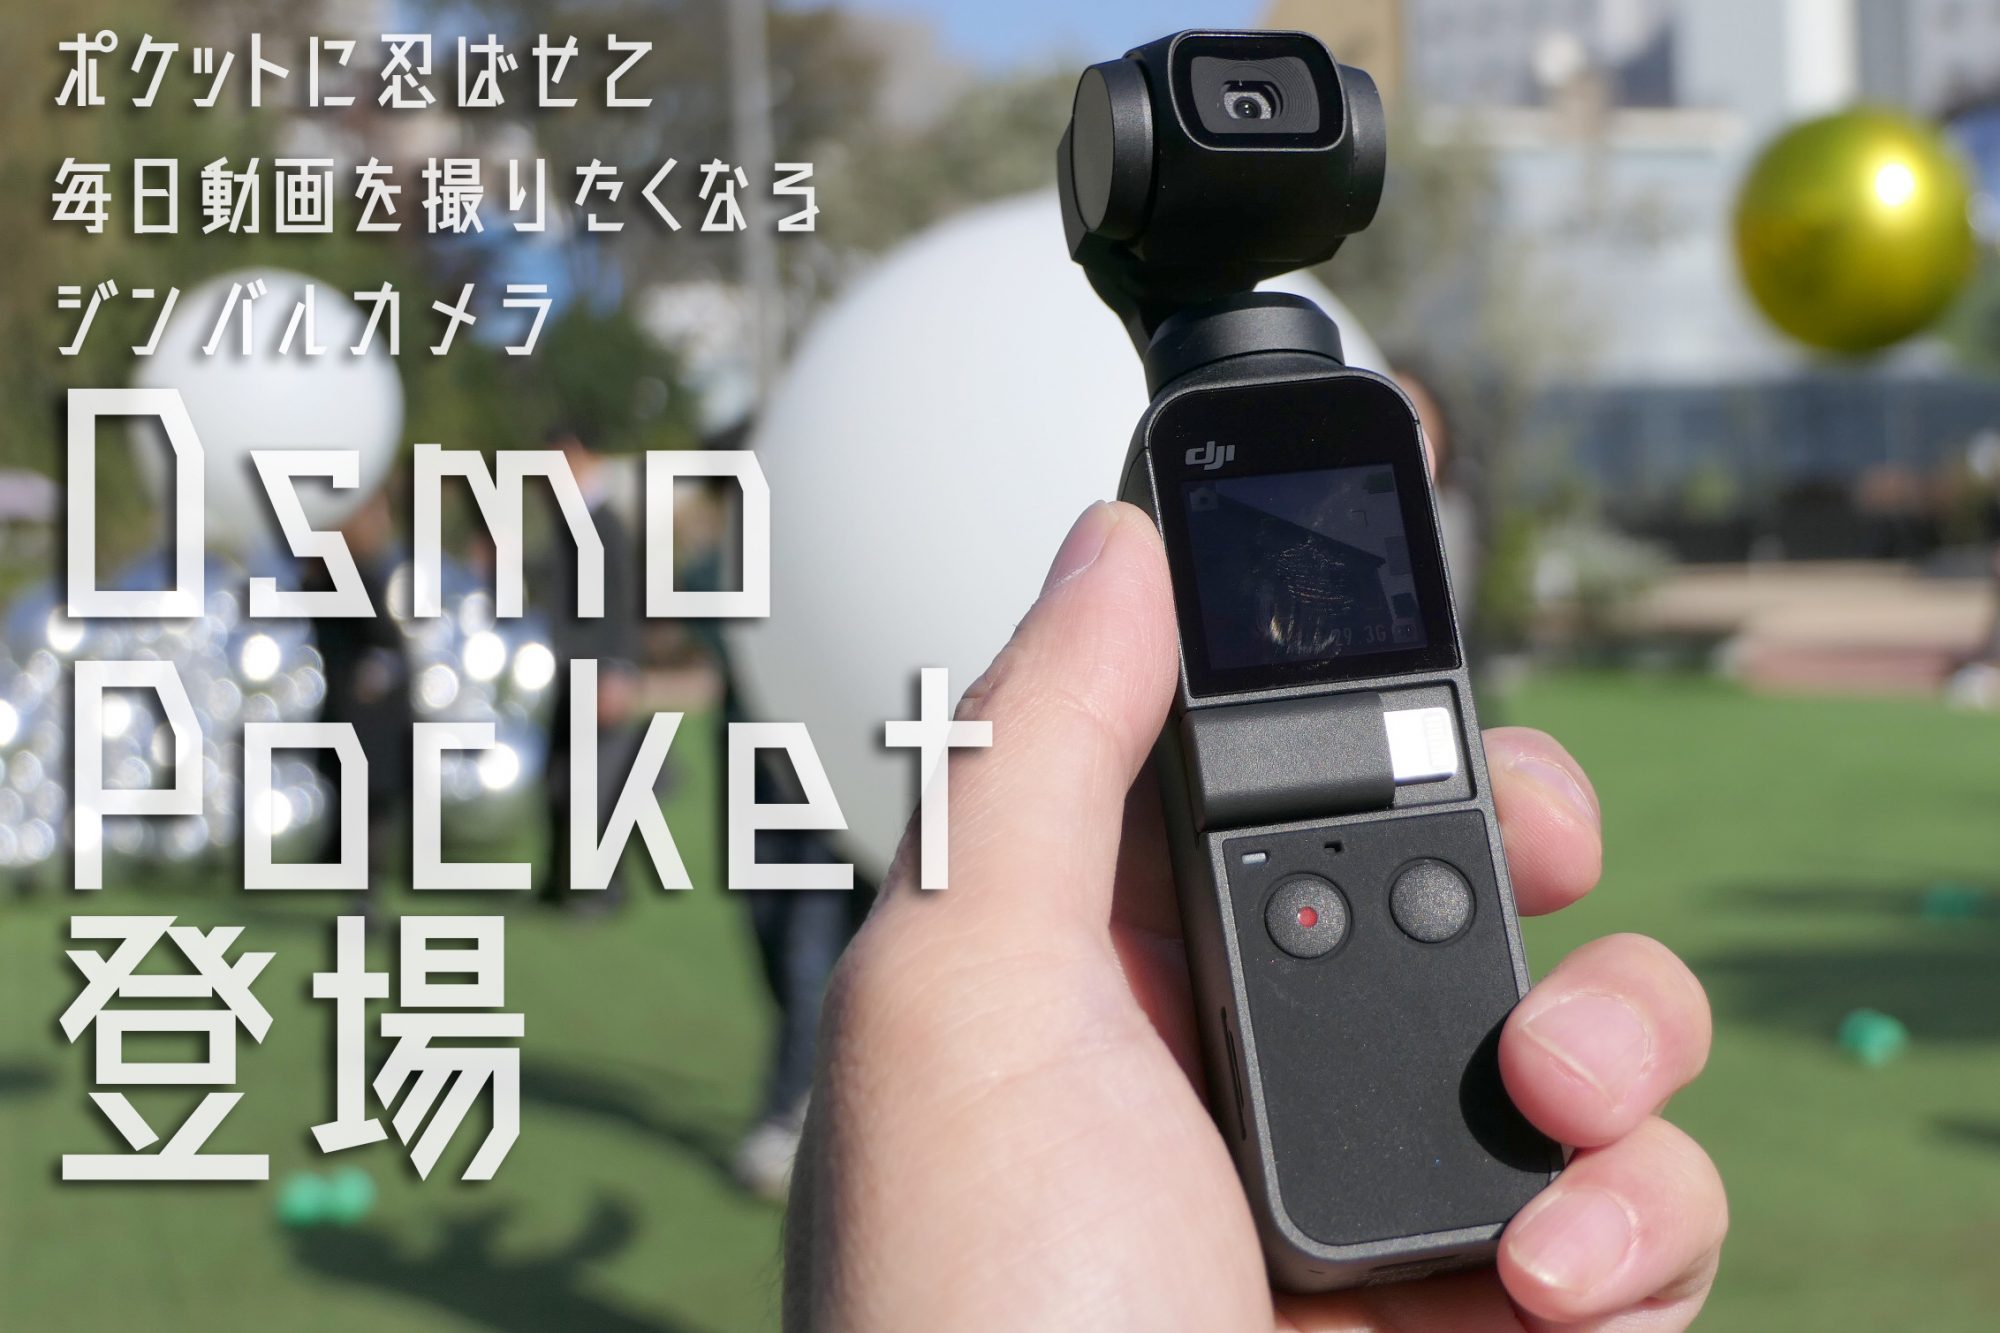 舗 たくみれネットショップ DJI OSMO POCKET 3軸ジンバル, 4Kカメラ 